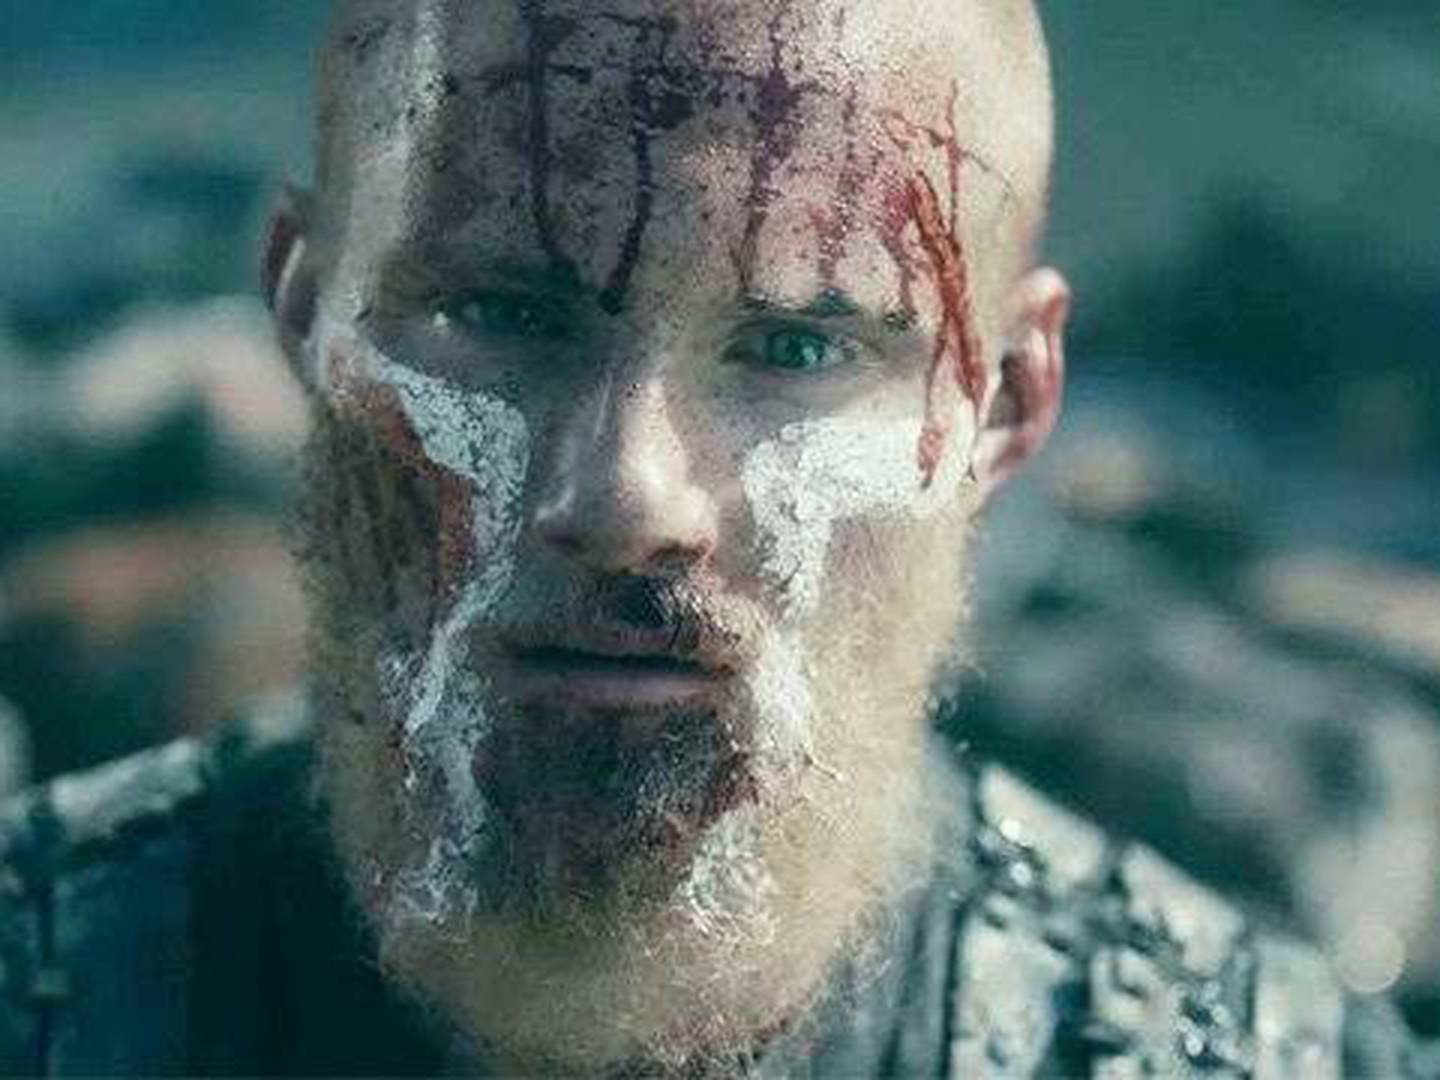 Vikings: Foto revela a mudança drástica de Bjorn no início e no